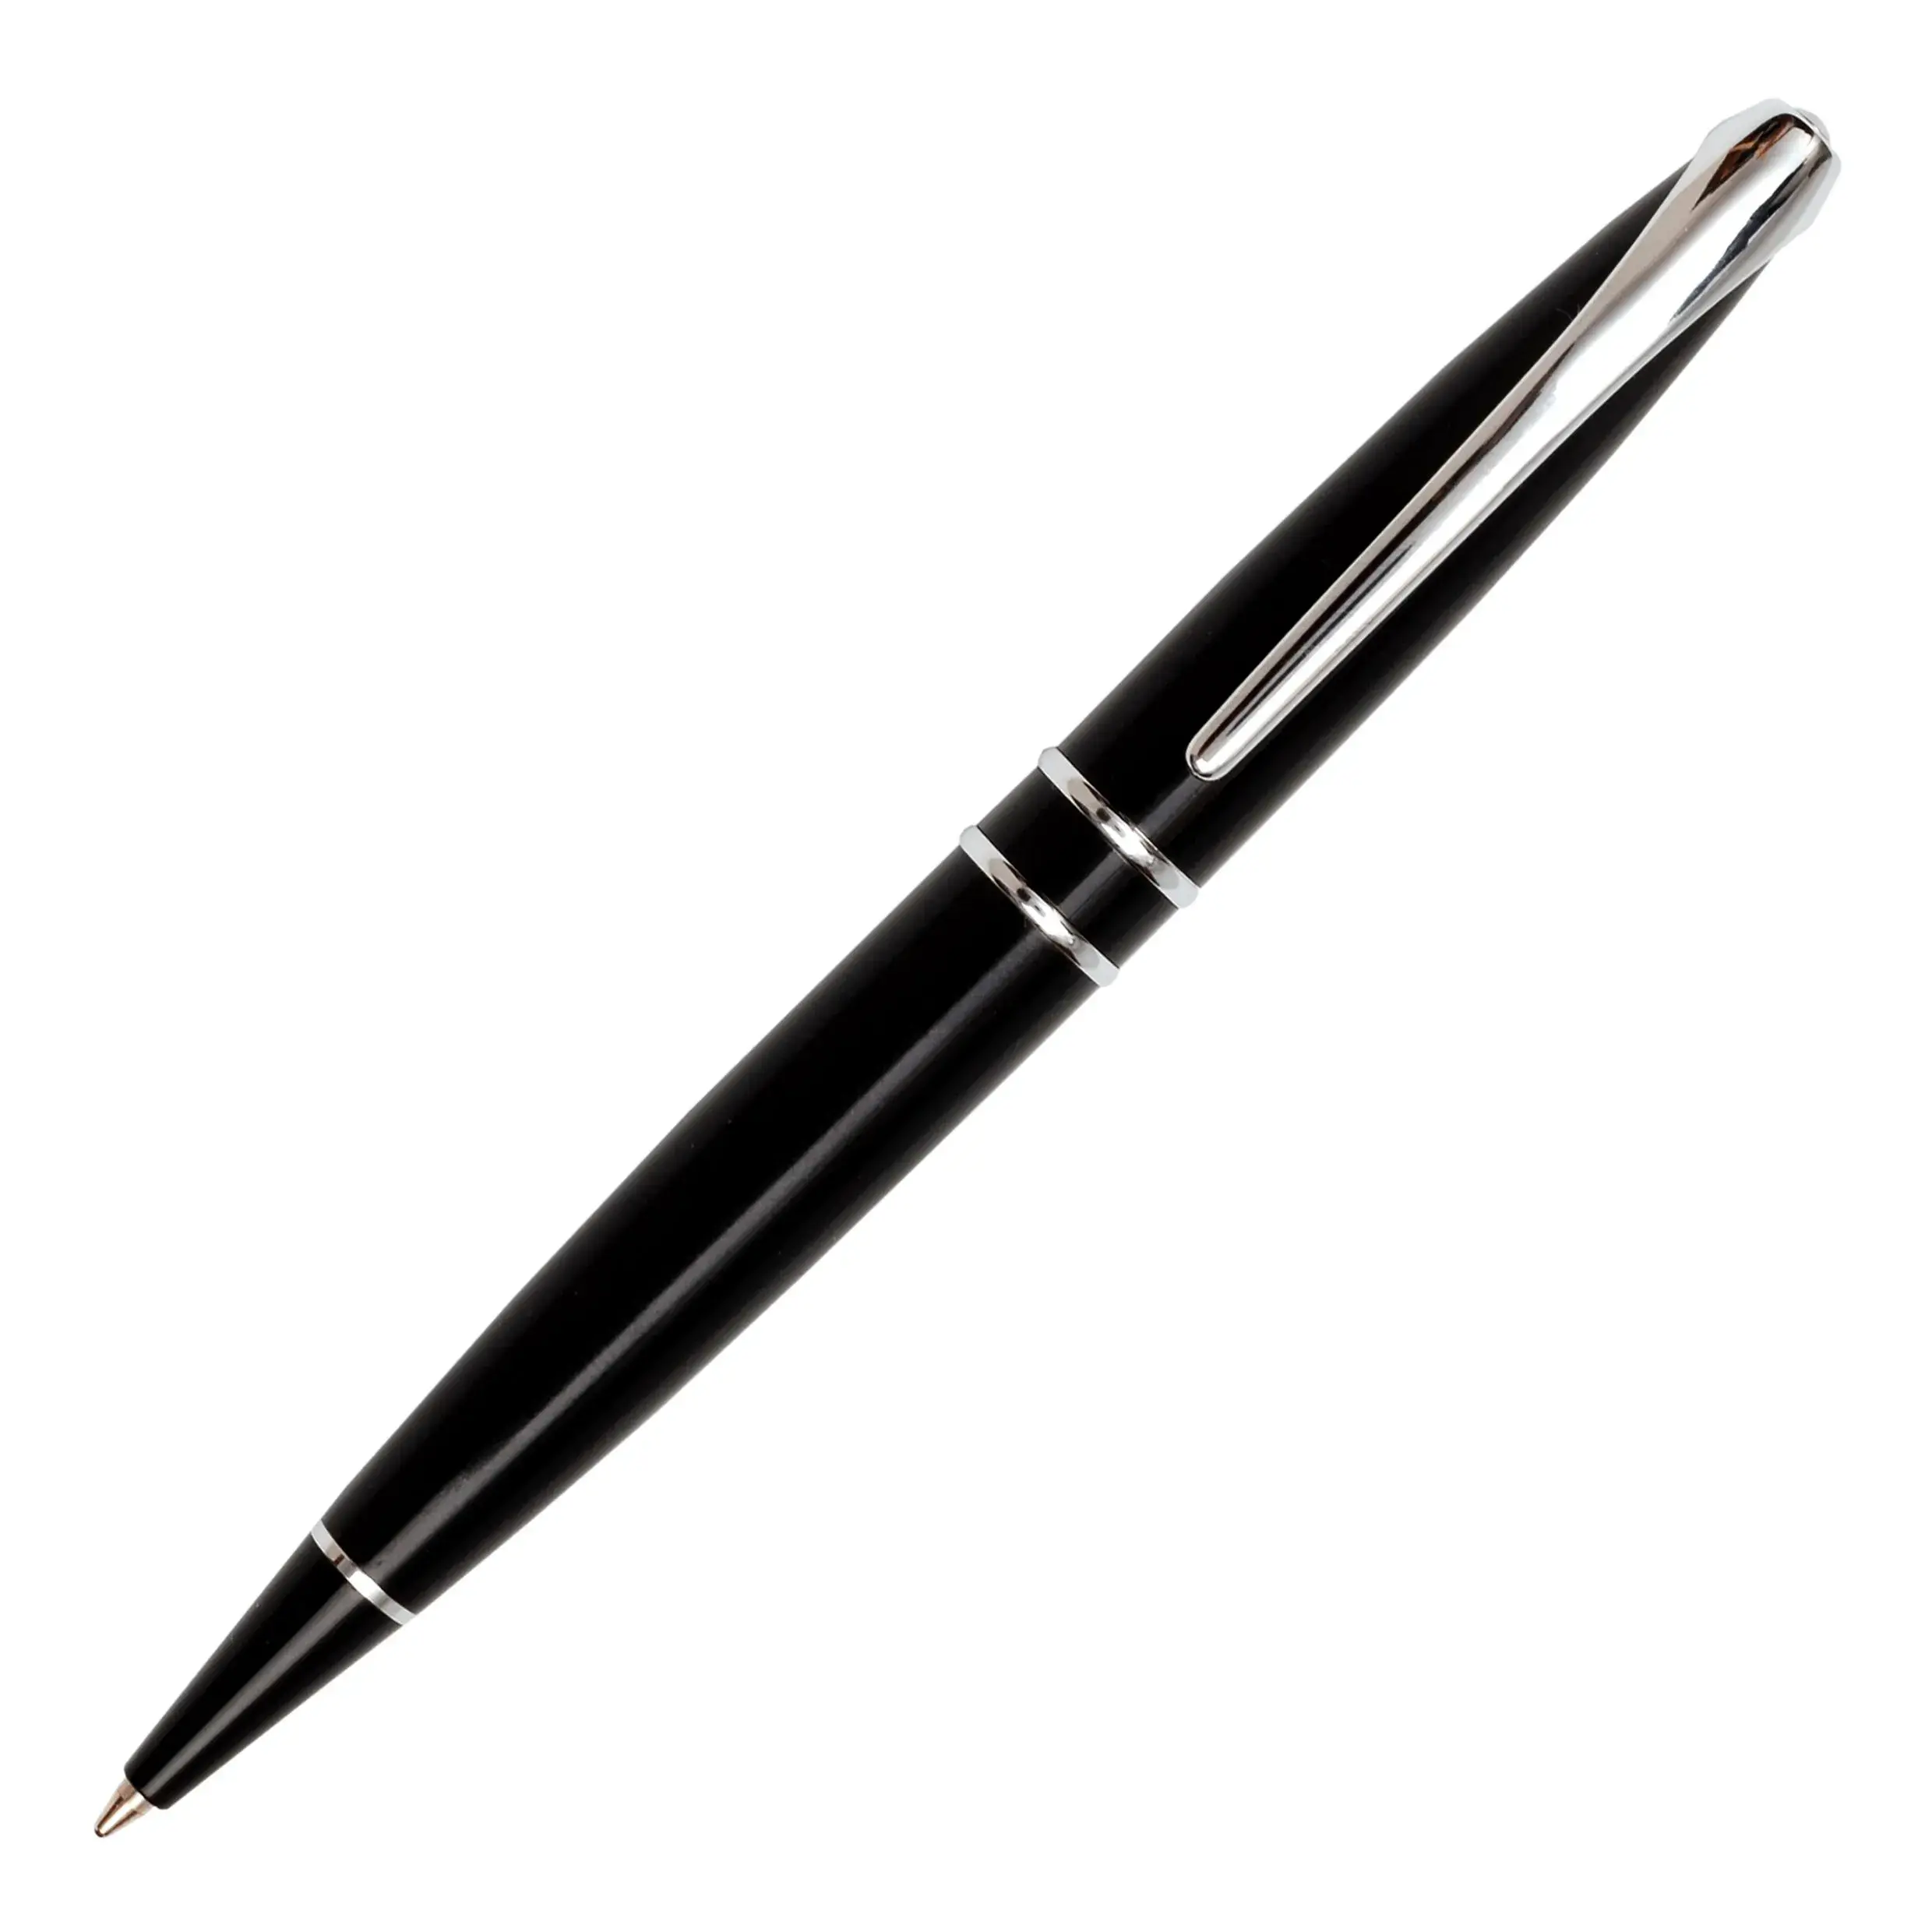 Idée cadeau collègue femme - Parure stylos bille et plume chrome